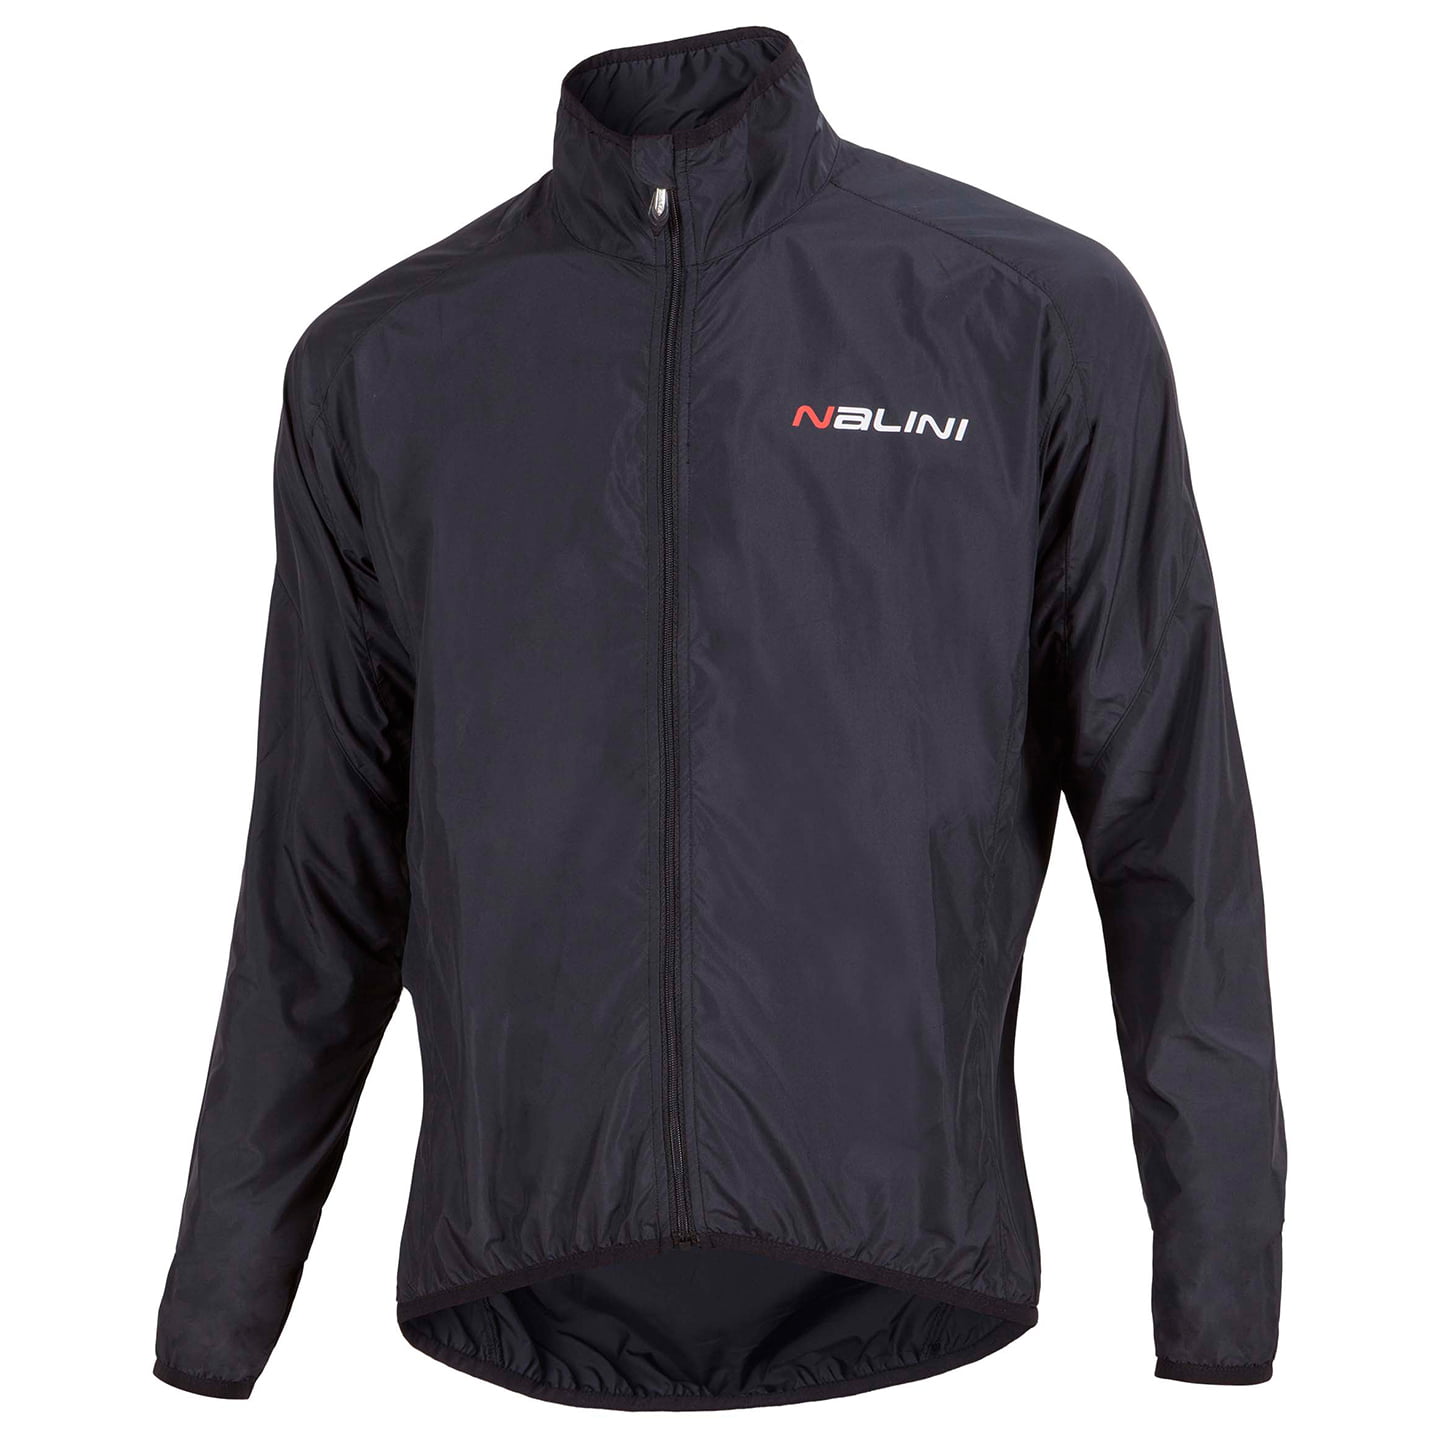 Aria Wind Jacket Wind Jacket, for men, size M, Bike jacket, Cycling clothing